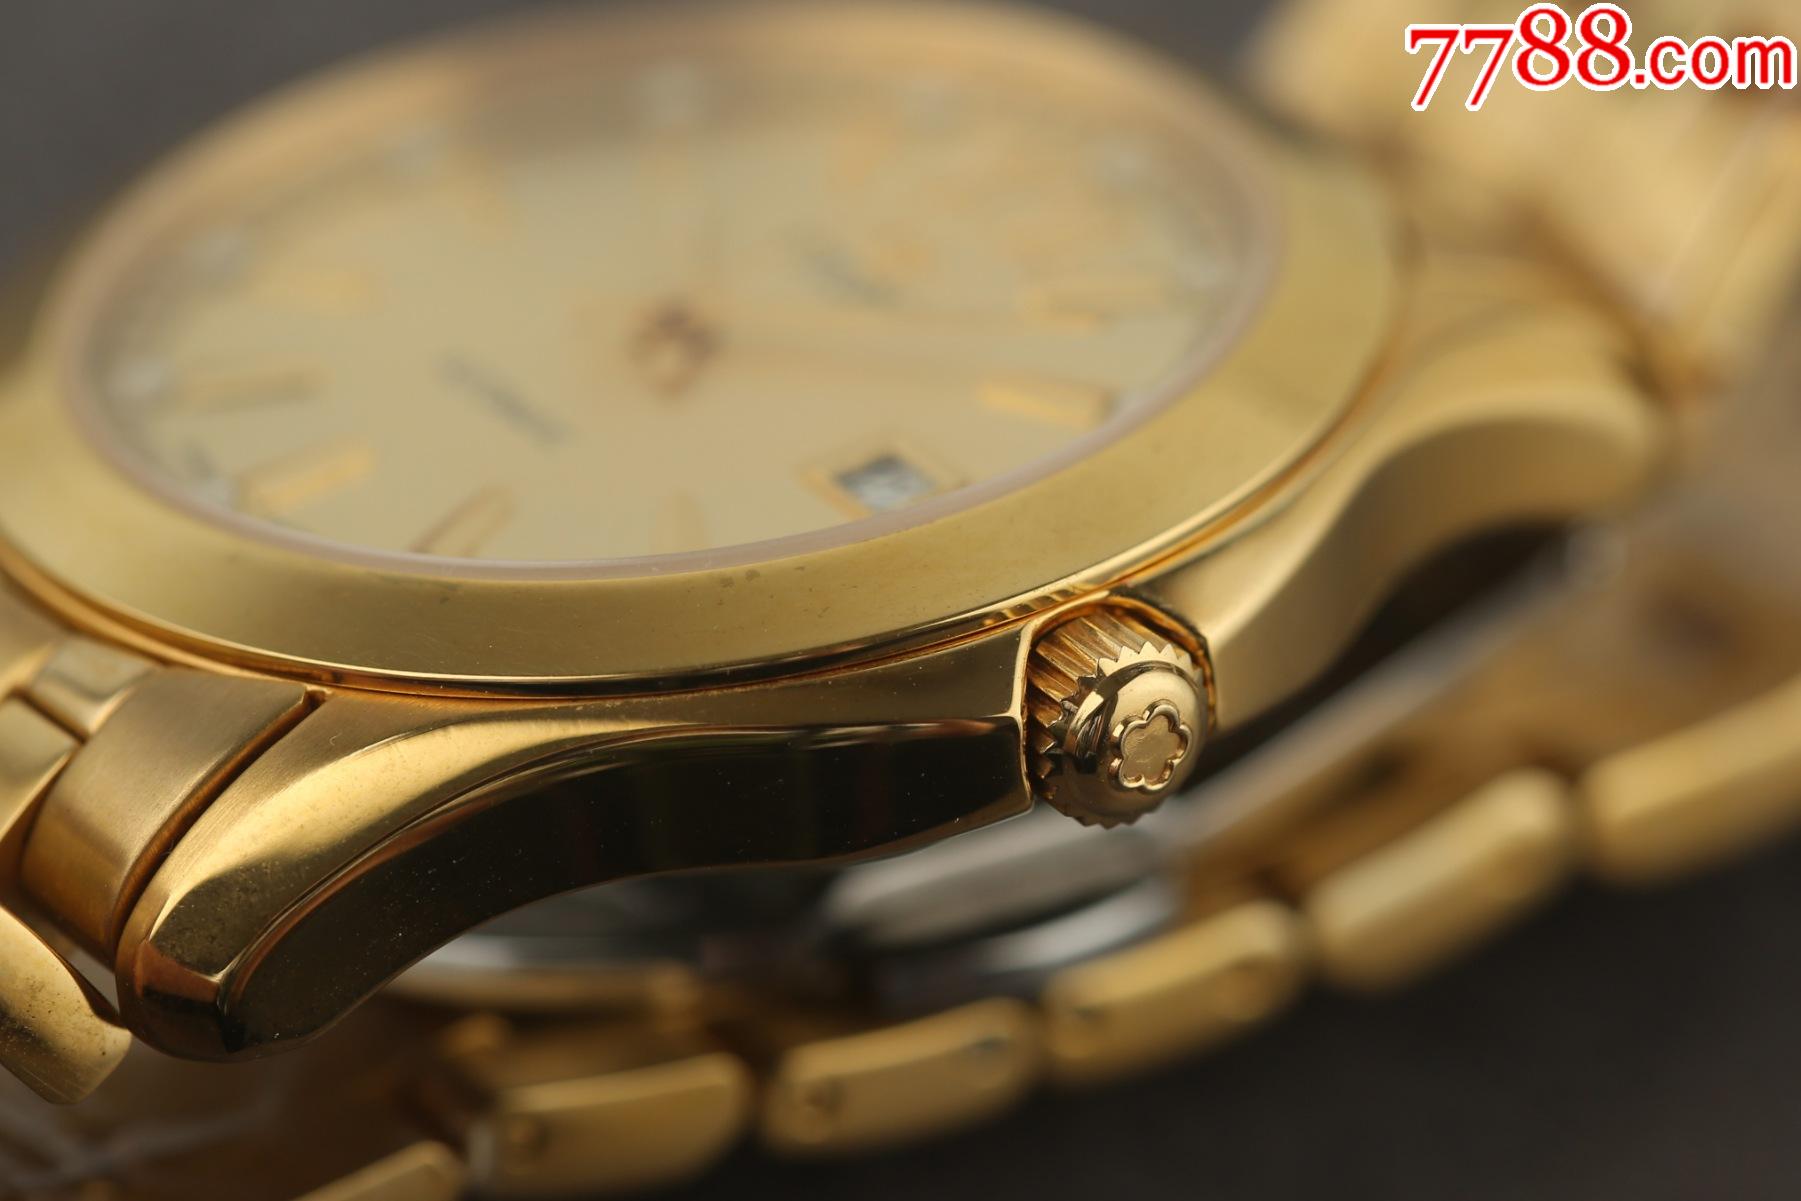 库存未使用品瑞士梅花手表经典全镀金款高贵优雅款型